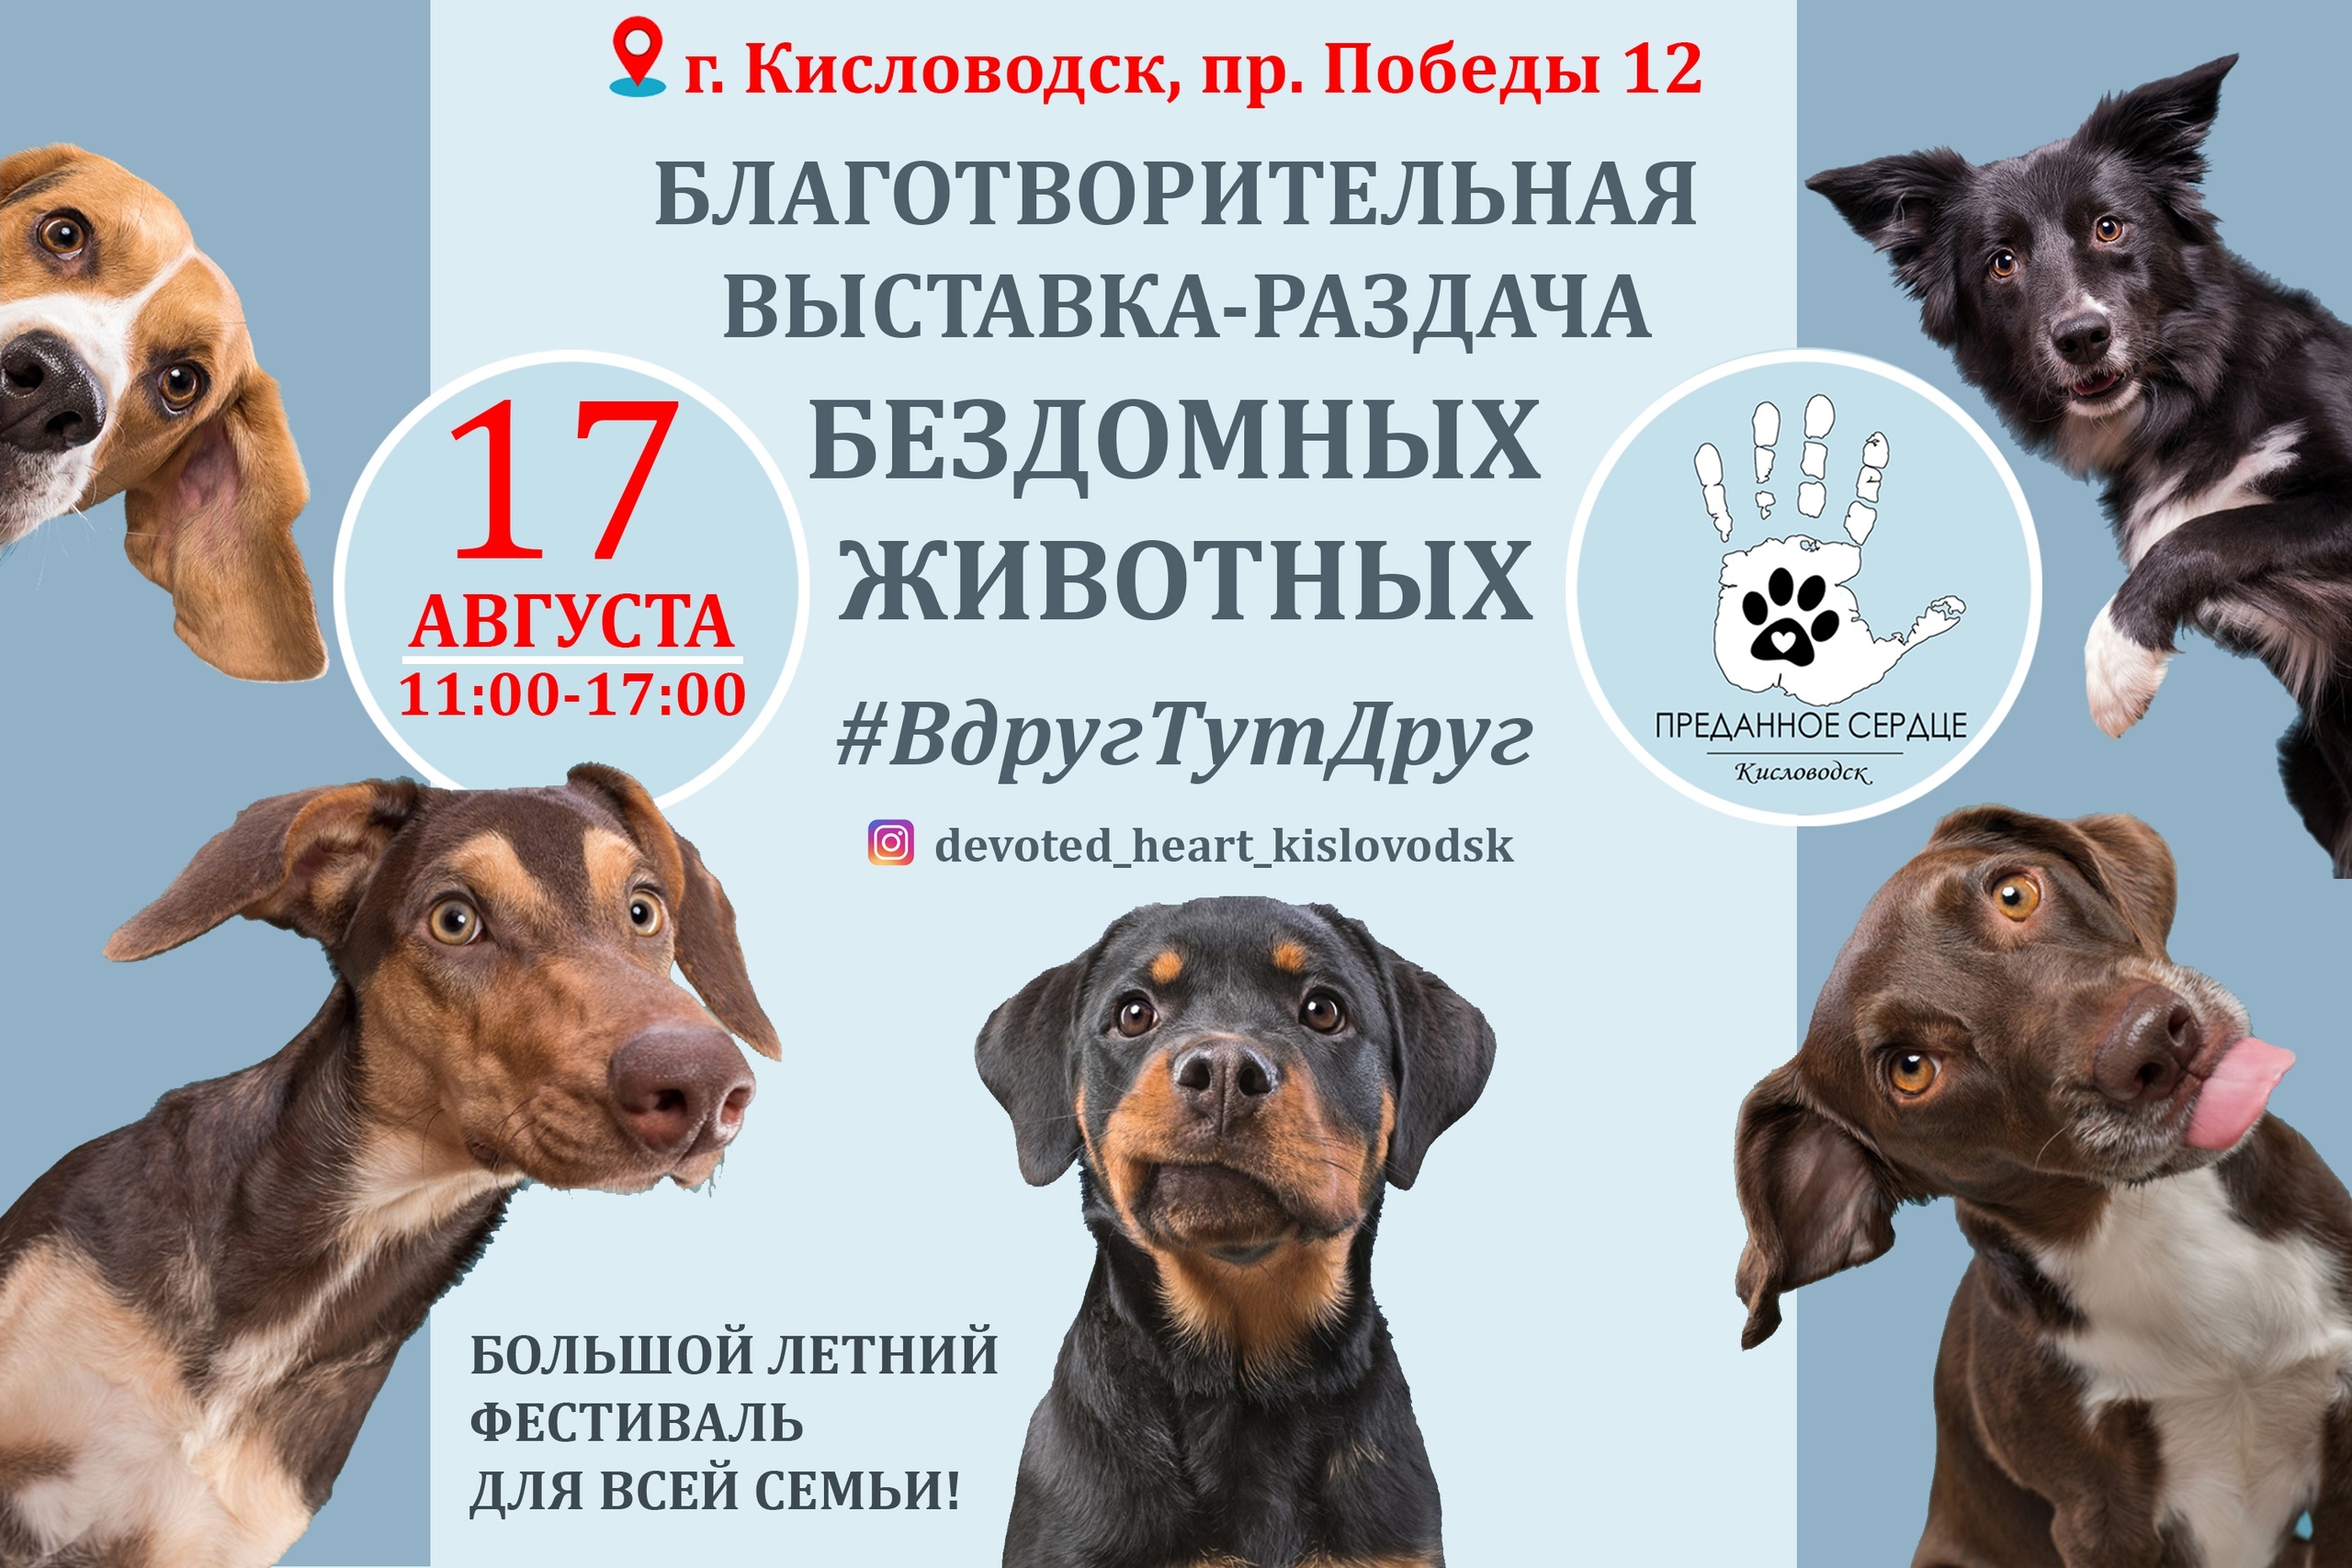 46 «хвостиков» ждут хозяев на  выставке-раздаче бездомных животных в Кисловодске